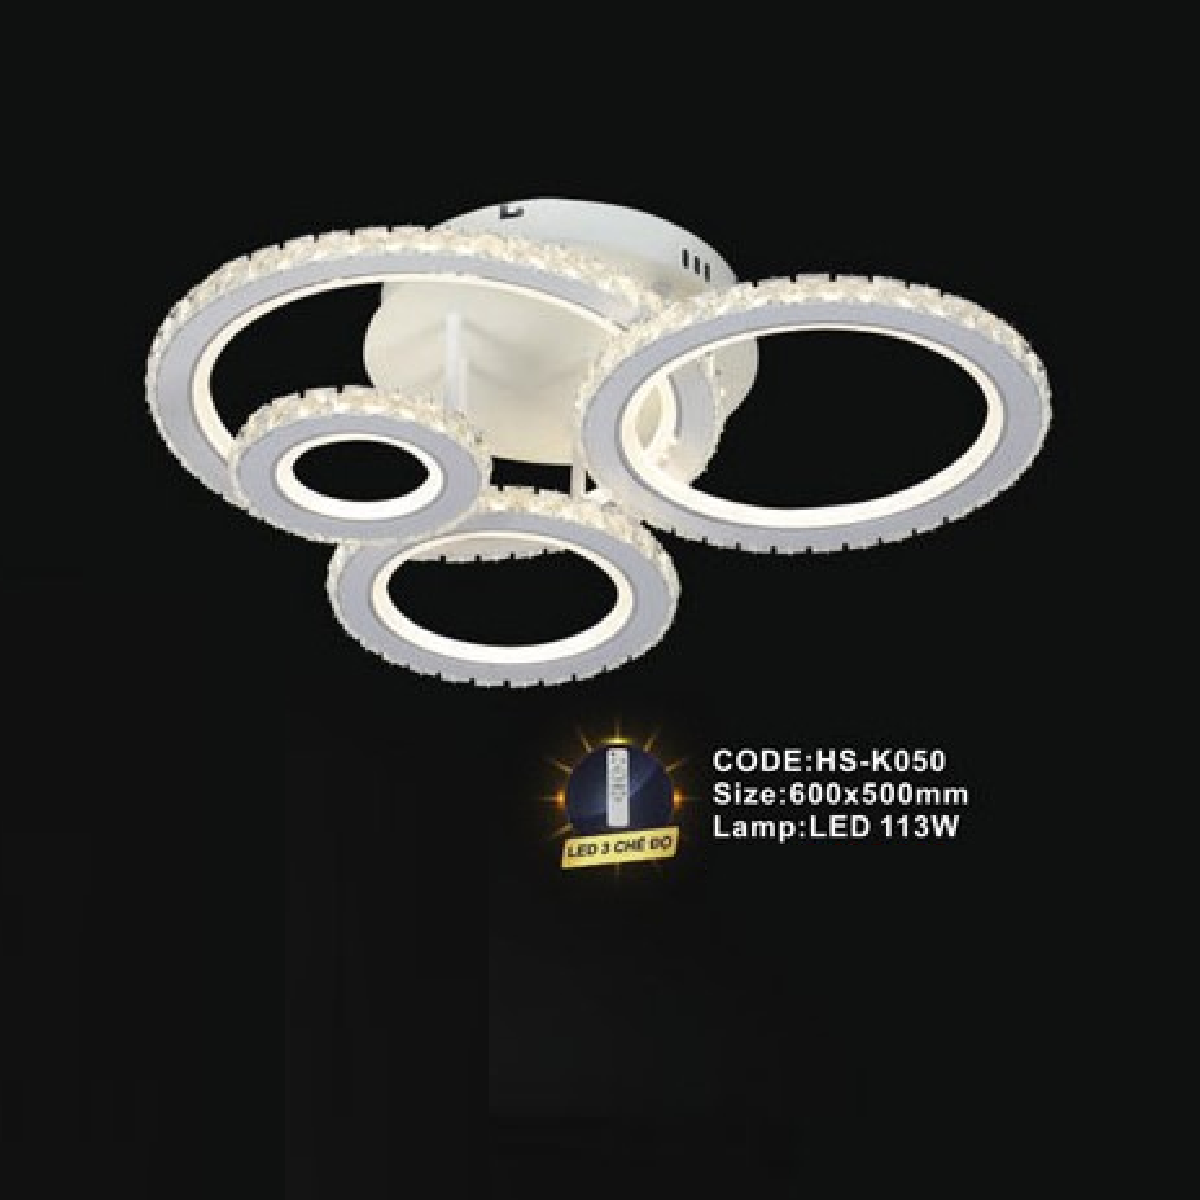 CODE: HS - K050: Đèn áp trần LED Mica - KT: 600mm x 500mm - Đèn LED 113W ánh sáng đổi 3 màu